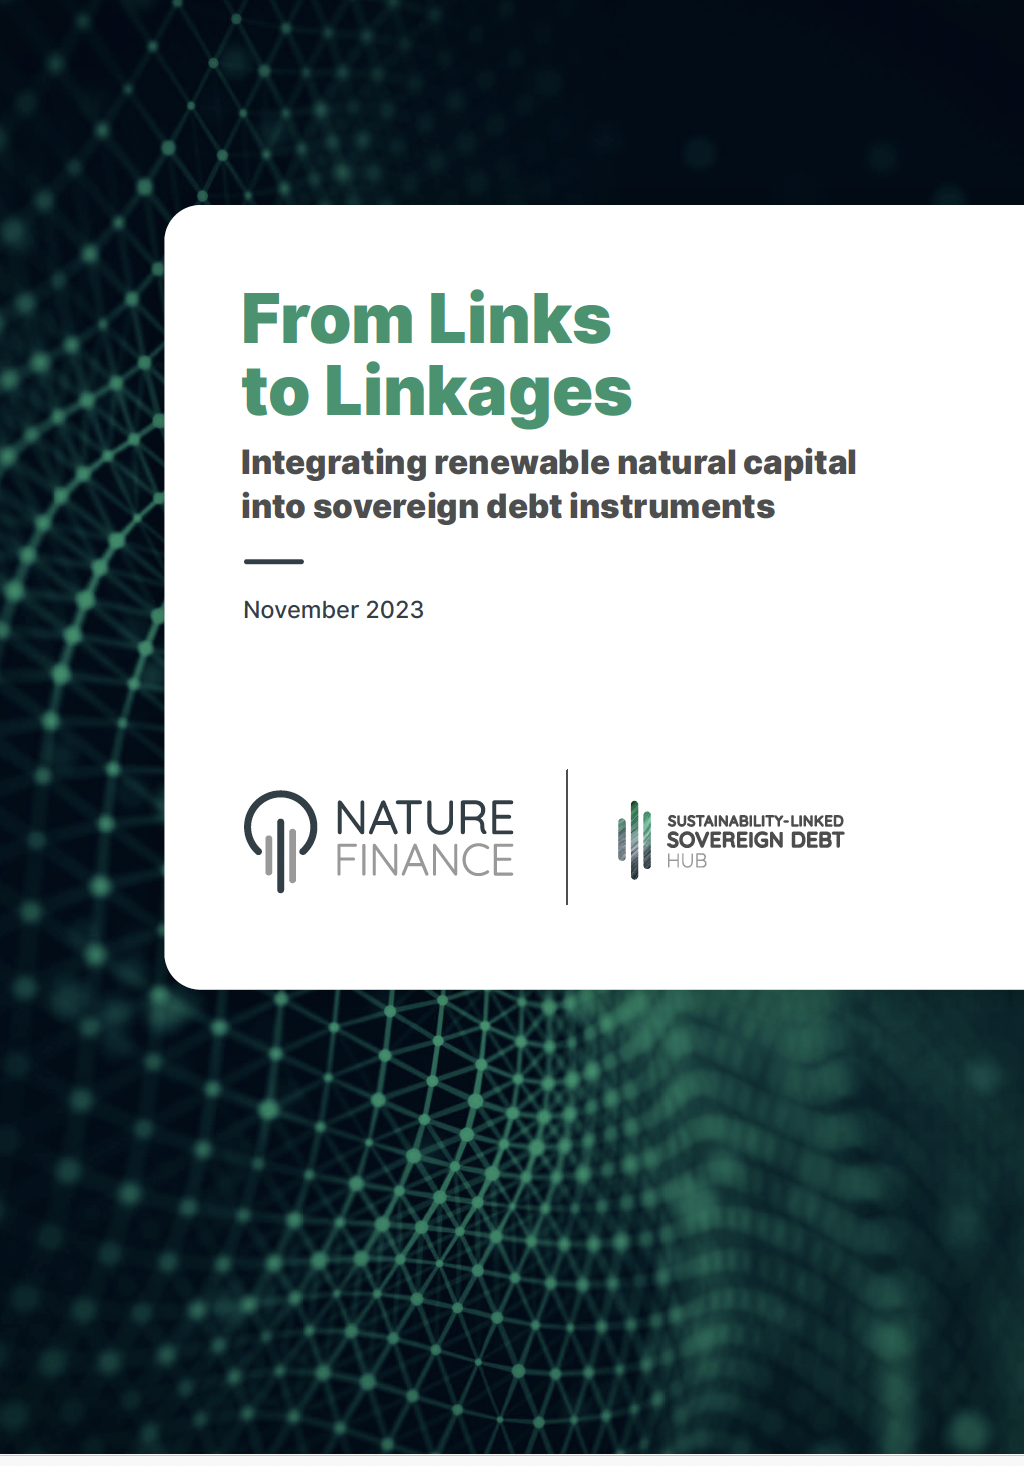 De liens en liens : Intégrer le capital naturel renouvelable dans les instruments de la dette souveraine